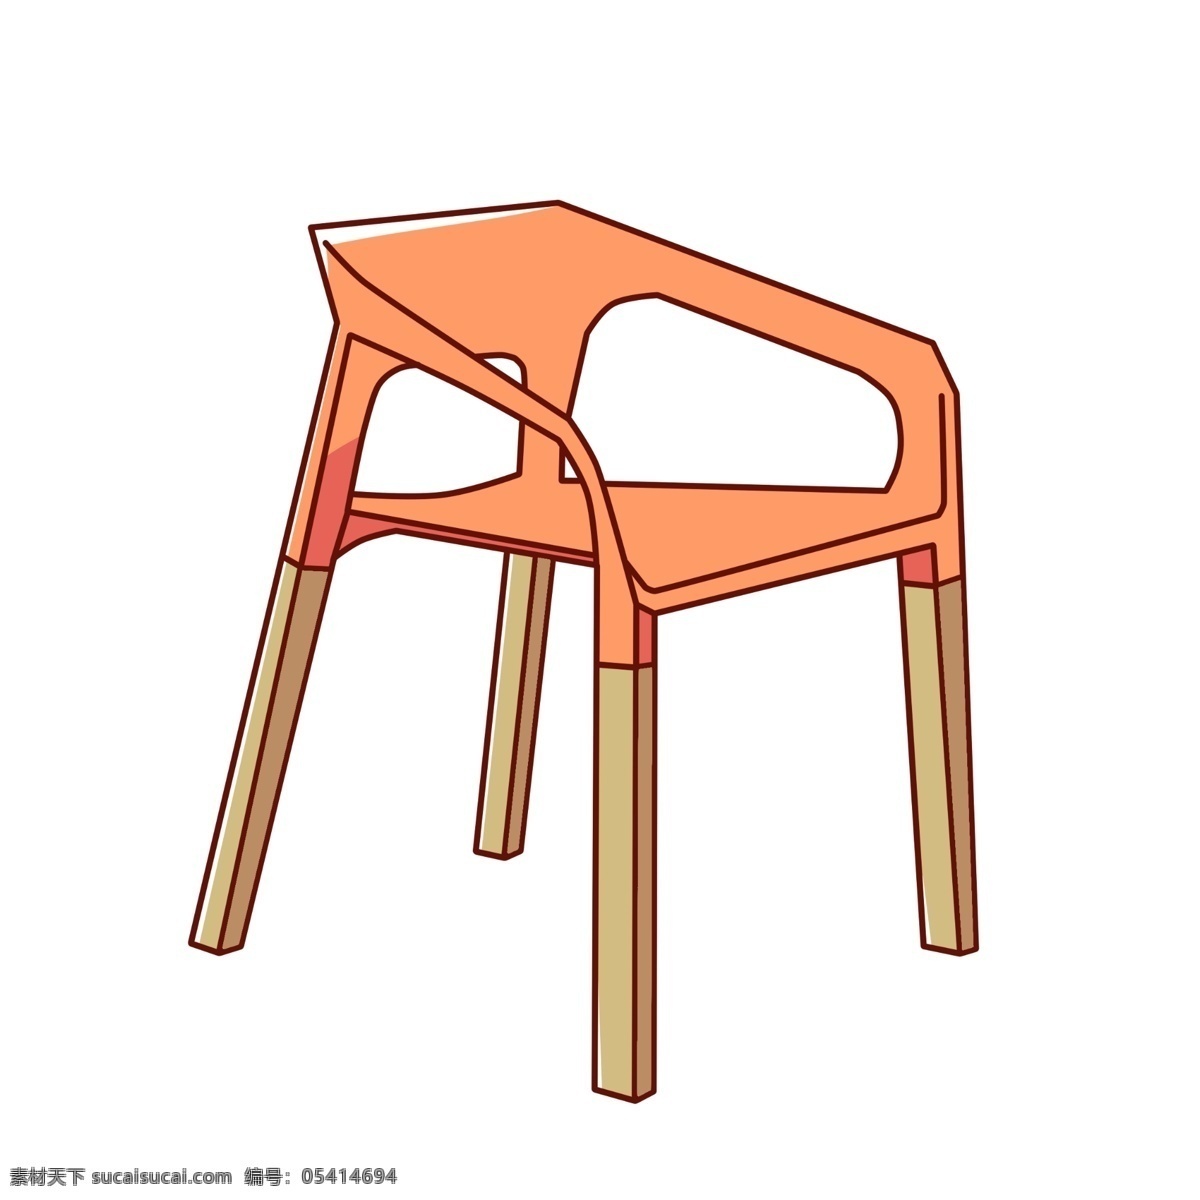 漂亮 椅子 装饰 插画 漂亮的椅子 黄色的椅子 创意椅子 立体椅子 精美椅子 卡通椅子 家具椅子